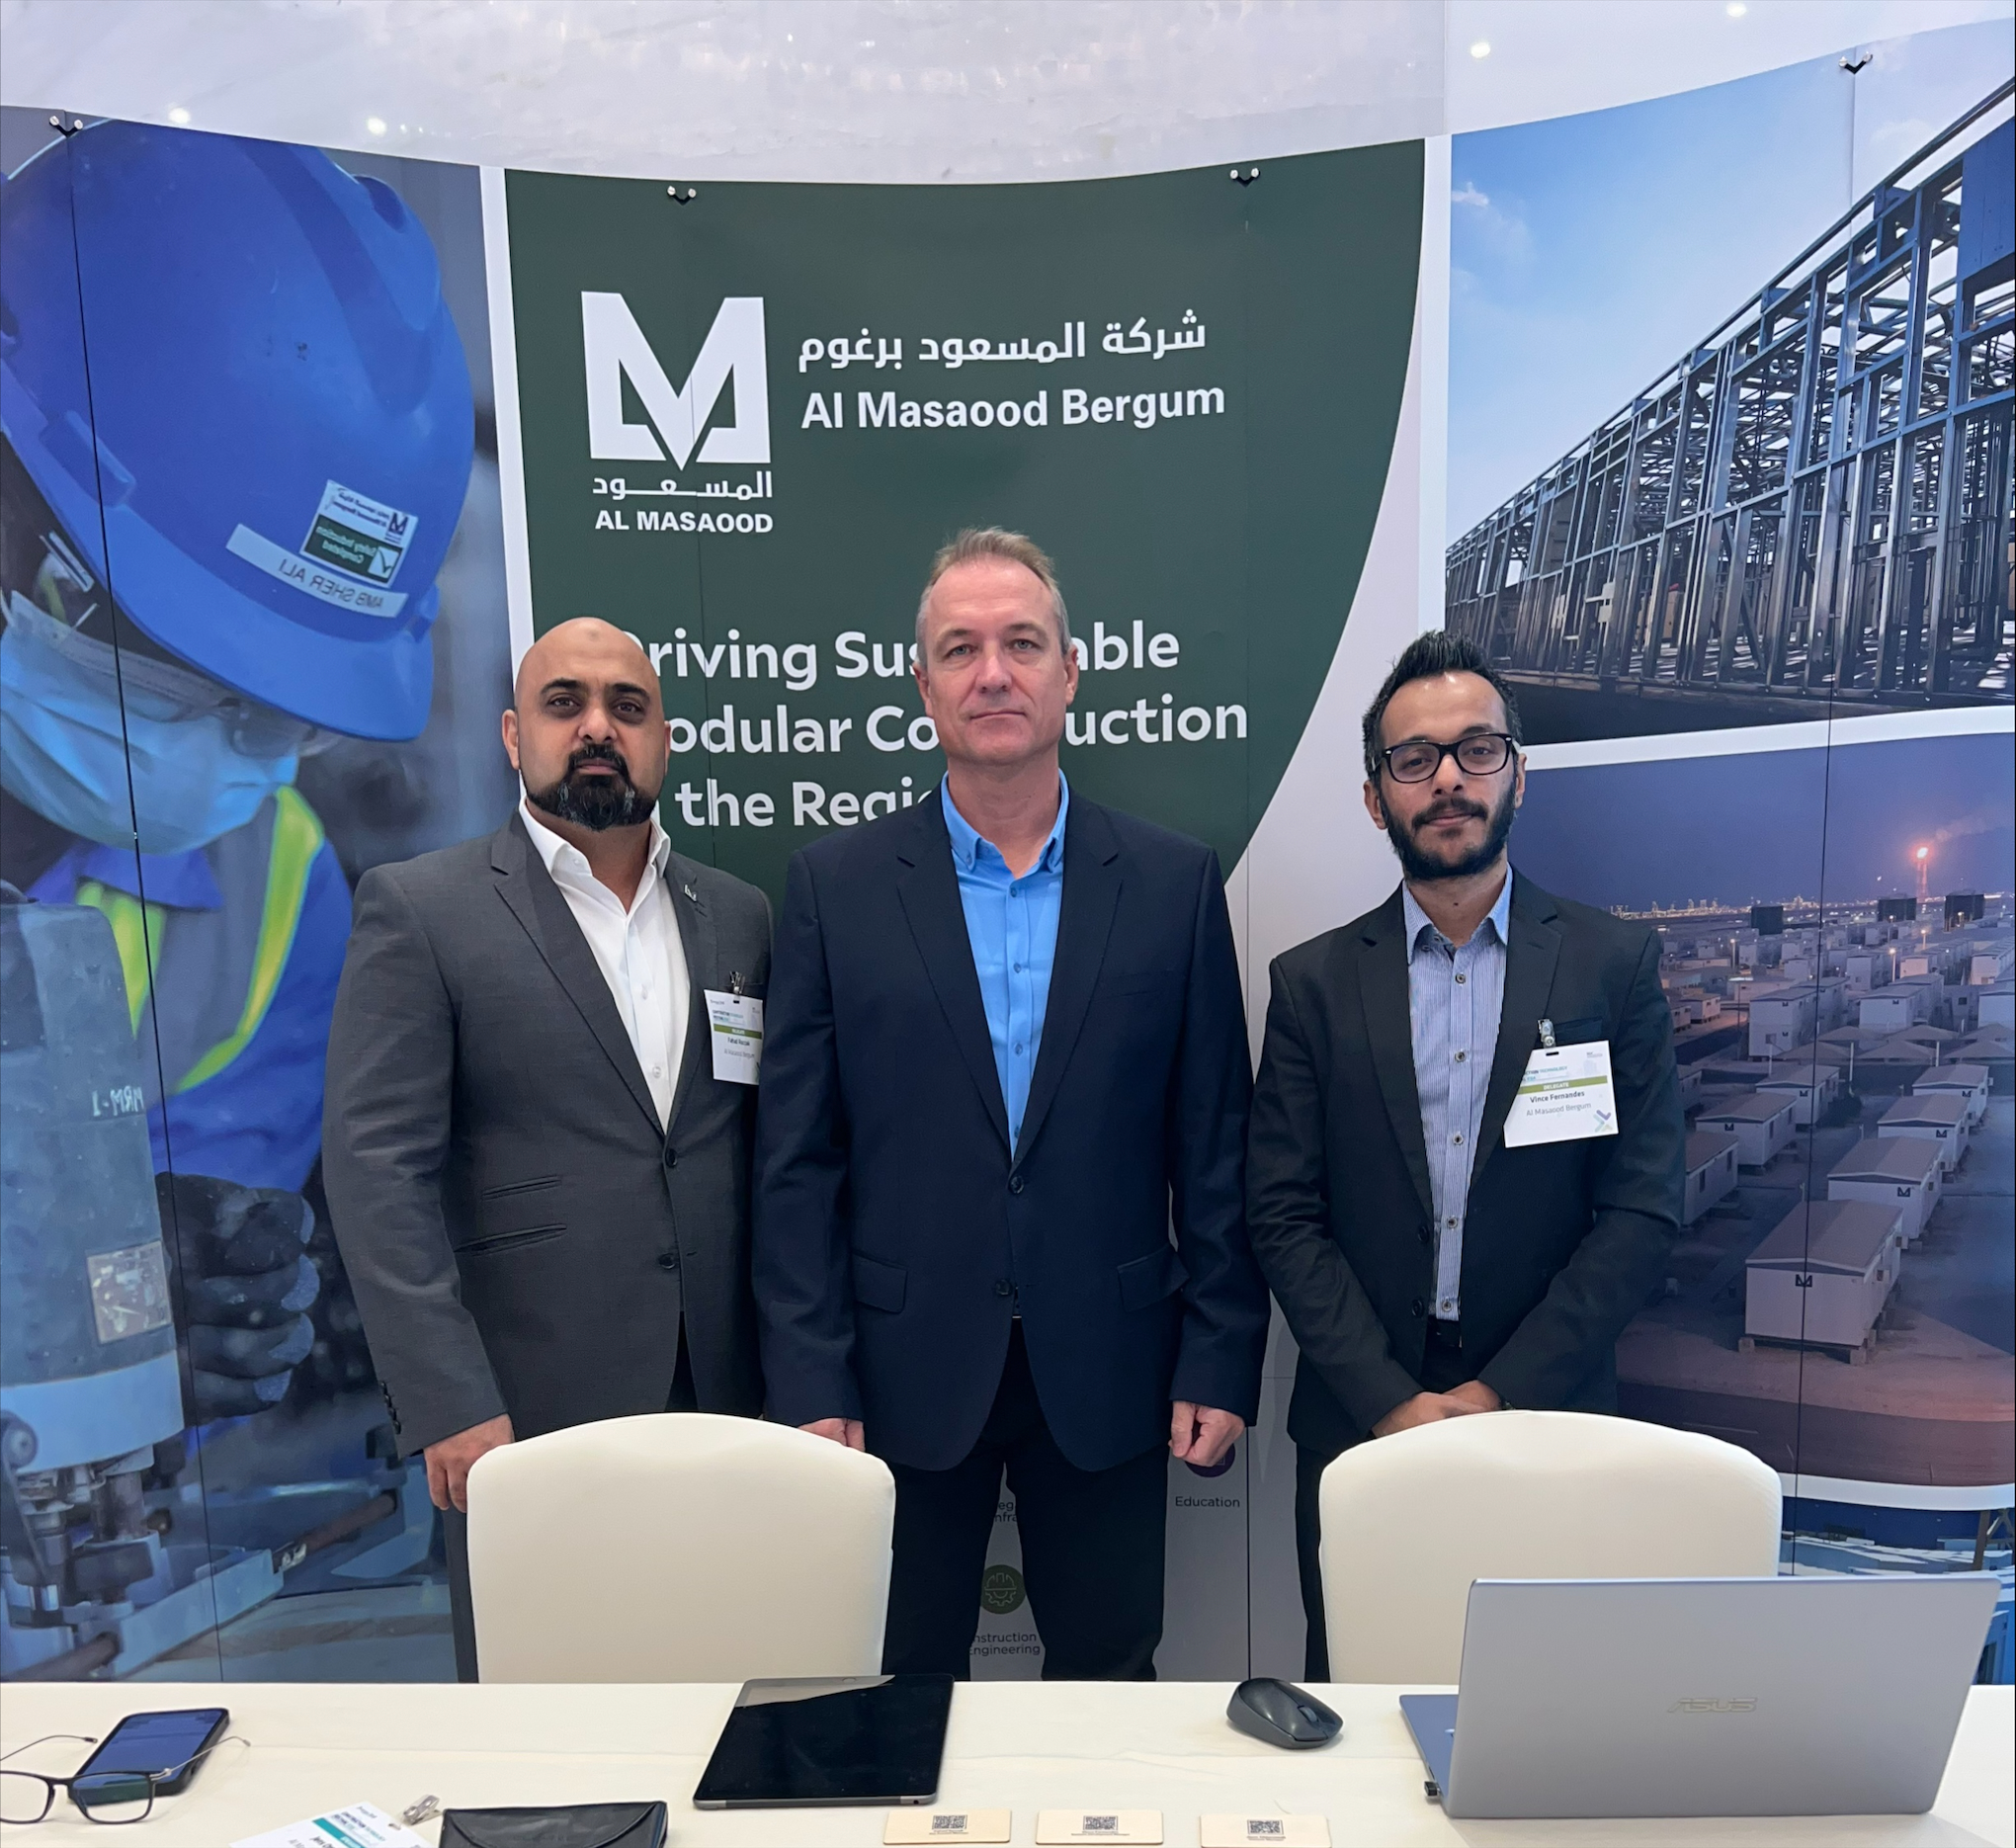 " شركة المسعود برغوم" تستعرض حلول الخشب المصفح التقاطعي (CLT) وأنظمة البناء المعيارية الهجينة (HMS) في "مهرجان تكنولوجيا البناء" في السعودية